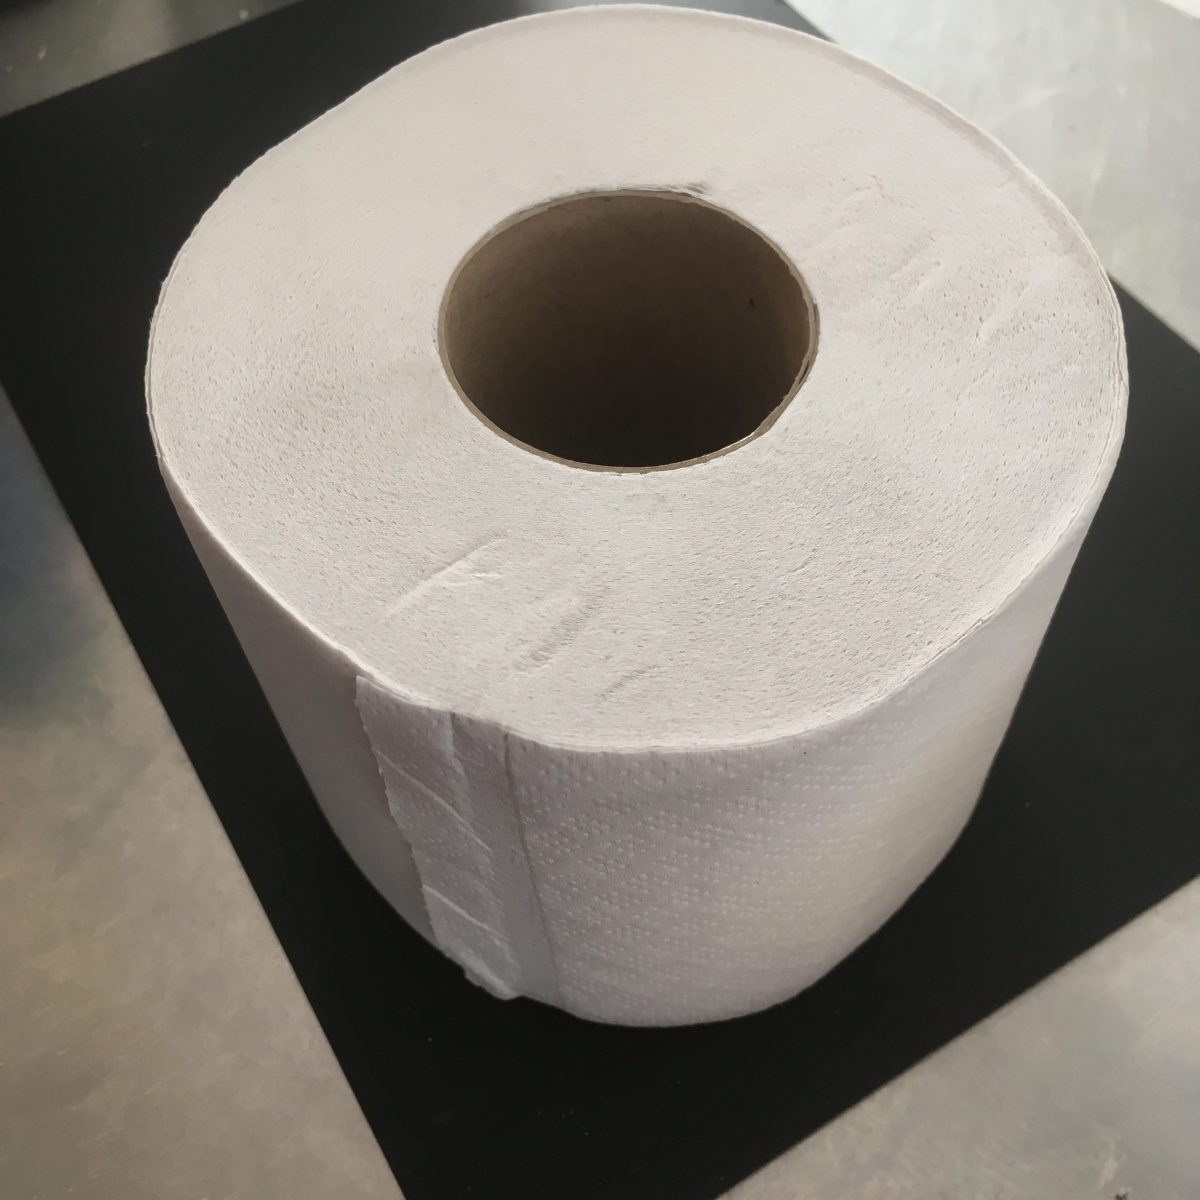 Papier toilette 600 feuilles